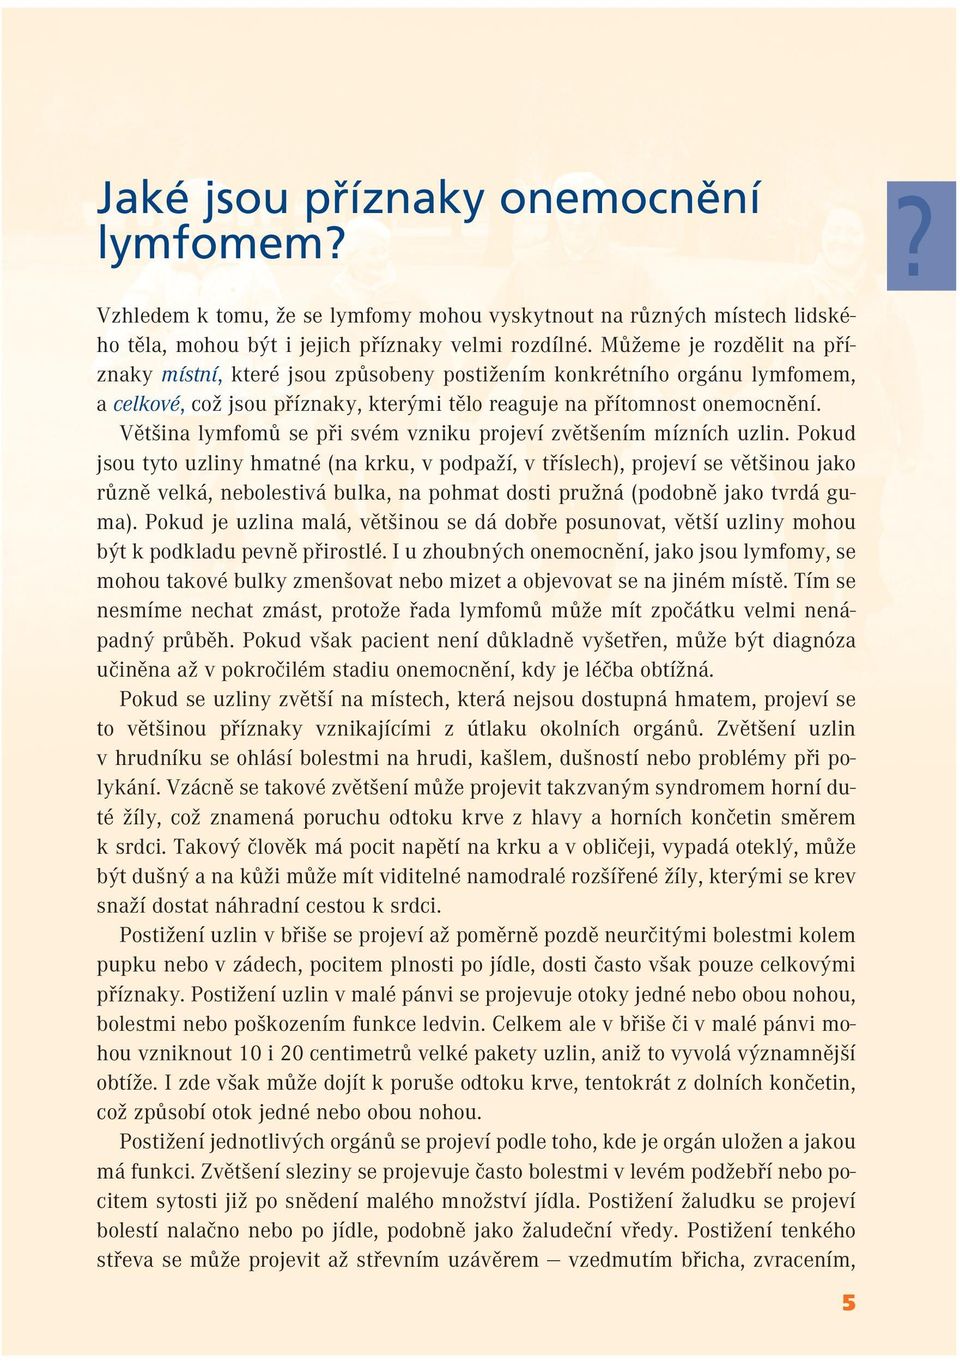 Většina lymfomů se při svém vzniku projeví zvětšením mízních uzlin.